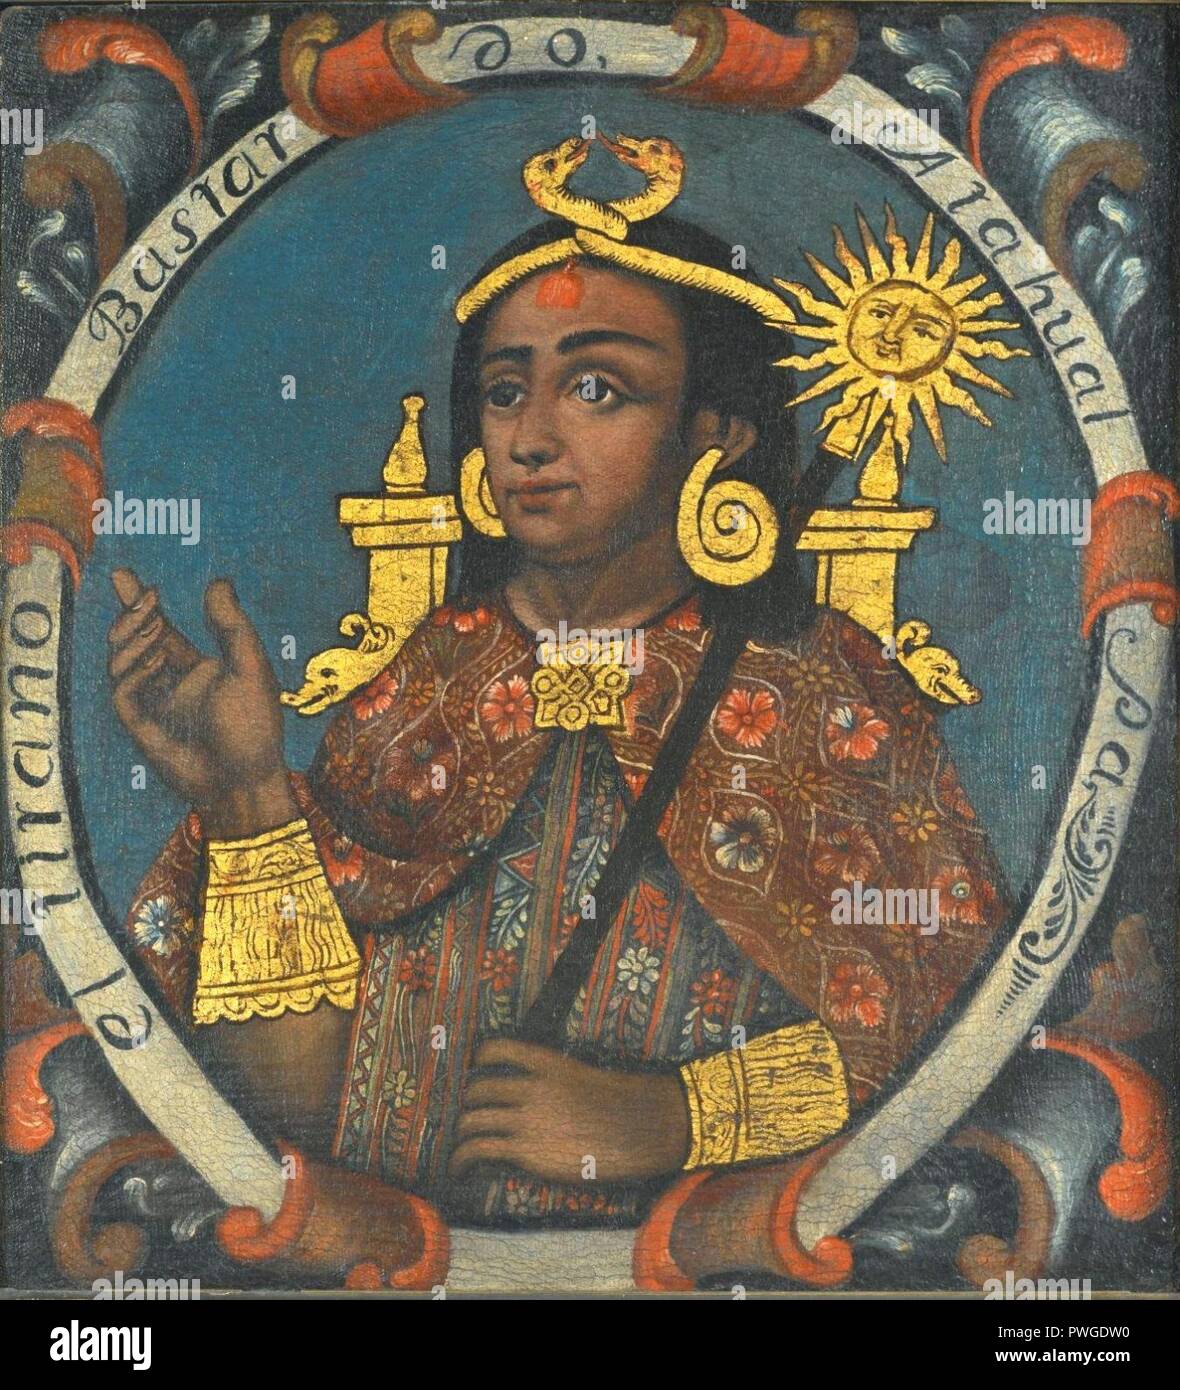 Atahualpa, quattordicesimo Inca, 1 di 14 ritratti di re Inca - Generale. Foto Stock